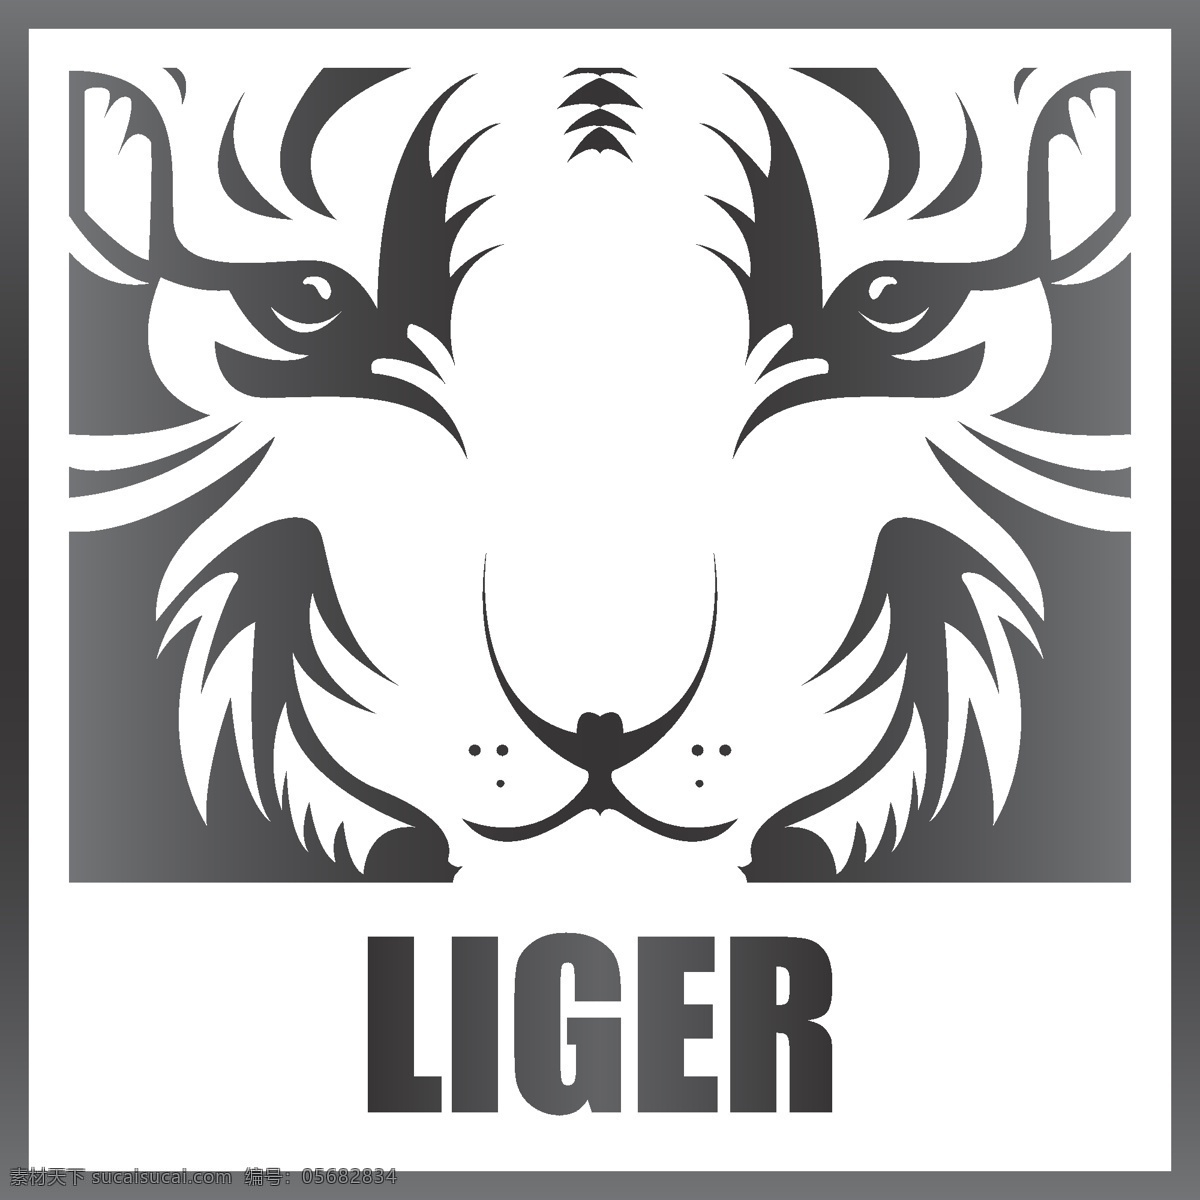 狮虎 兽 企业形象 logo 狮虎兽 狮子王 标志 企业vi 企业logo 动物 标识标志图标 矢量